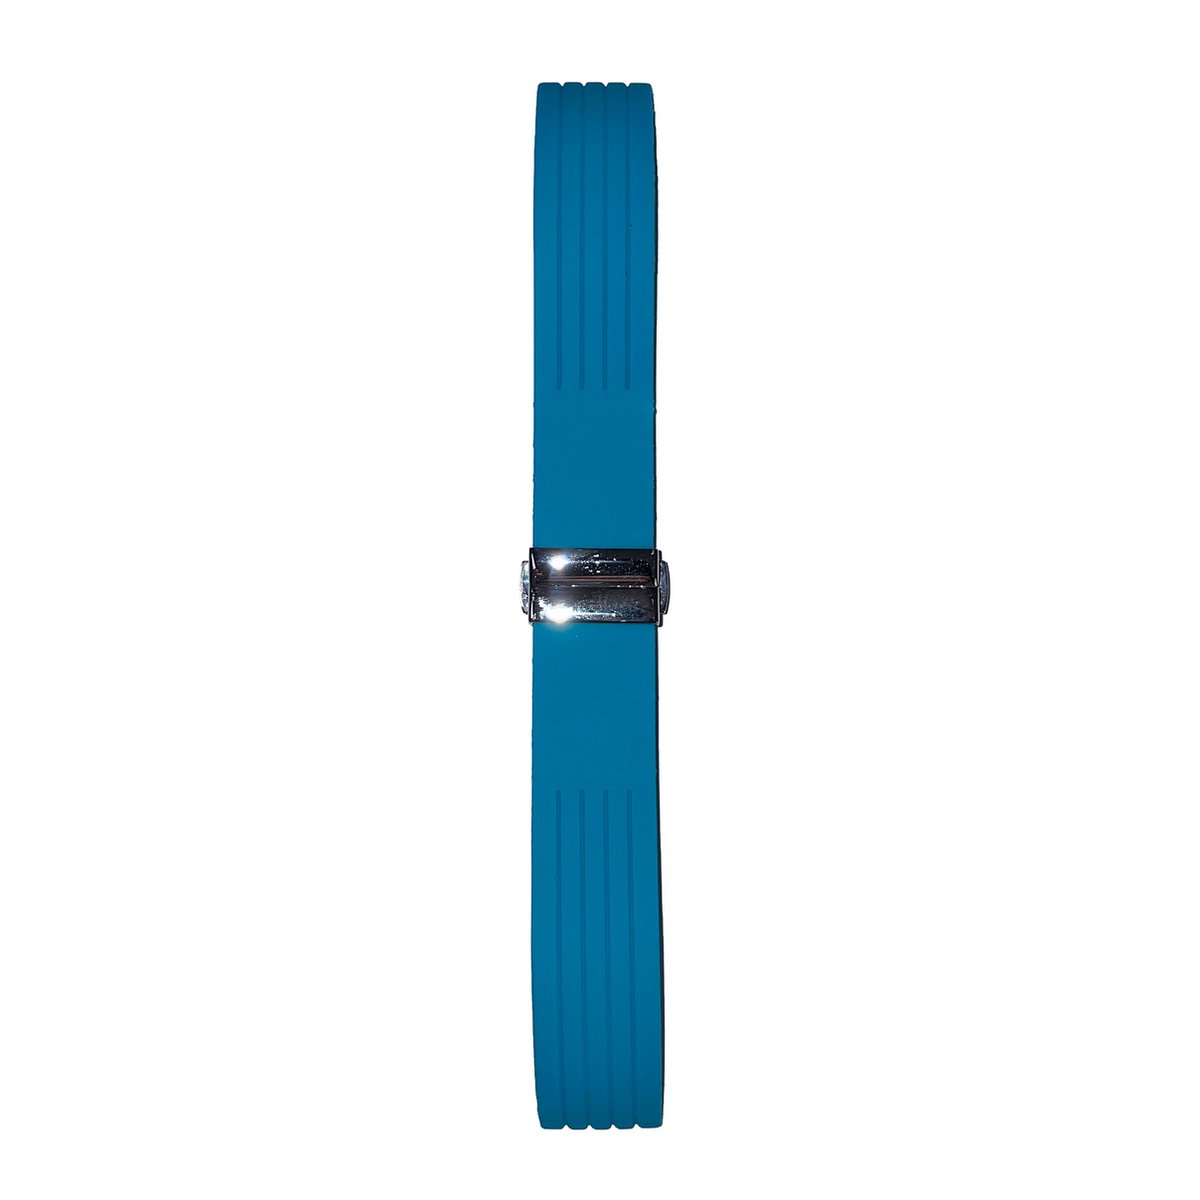 Horlogeband - 20mm - Blauw - Effen silicone band met lijnen - Roestvrijstalen gesp